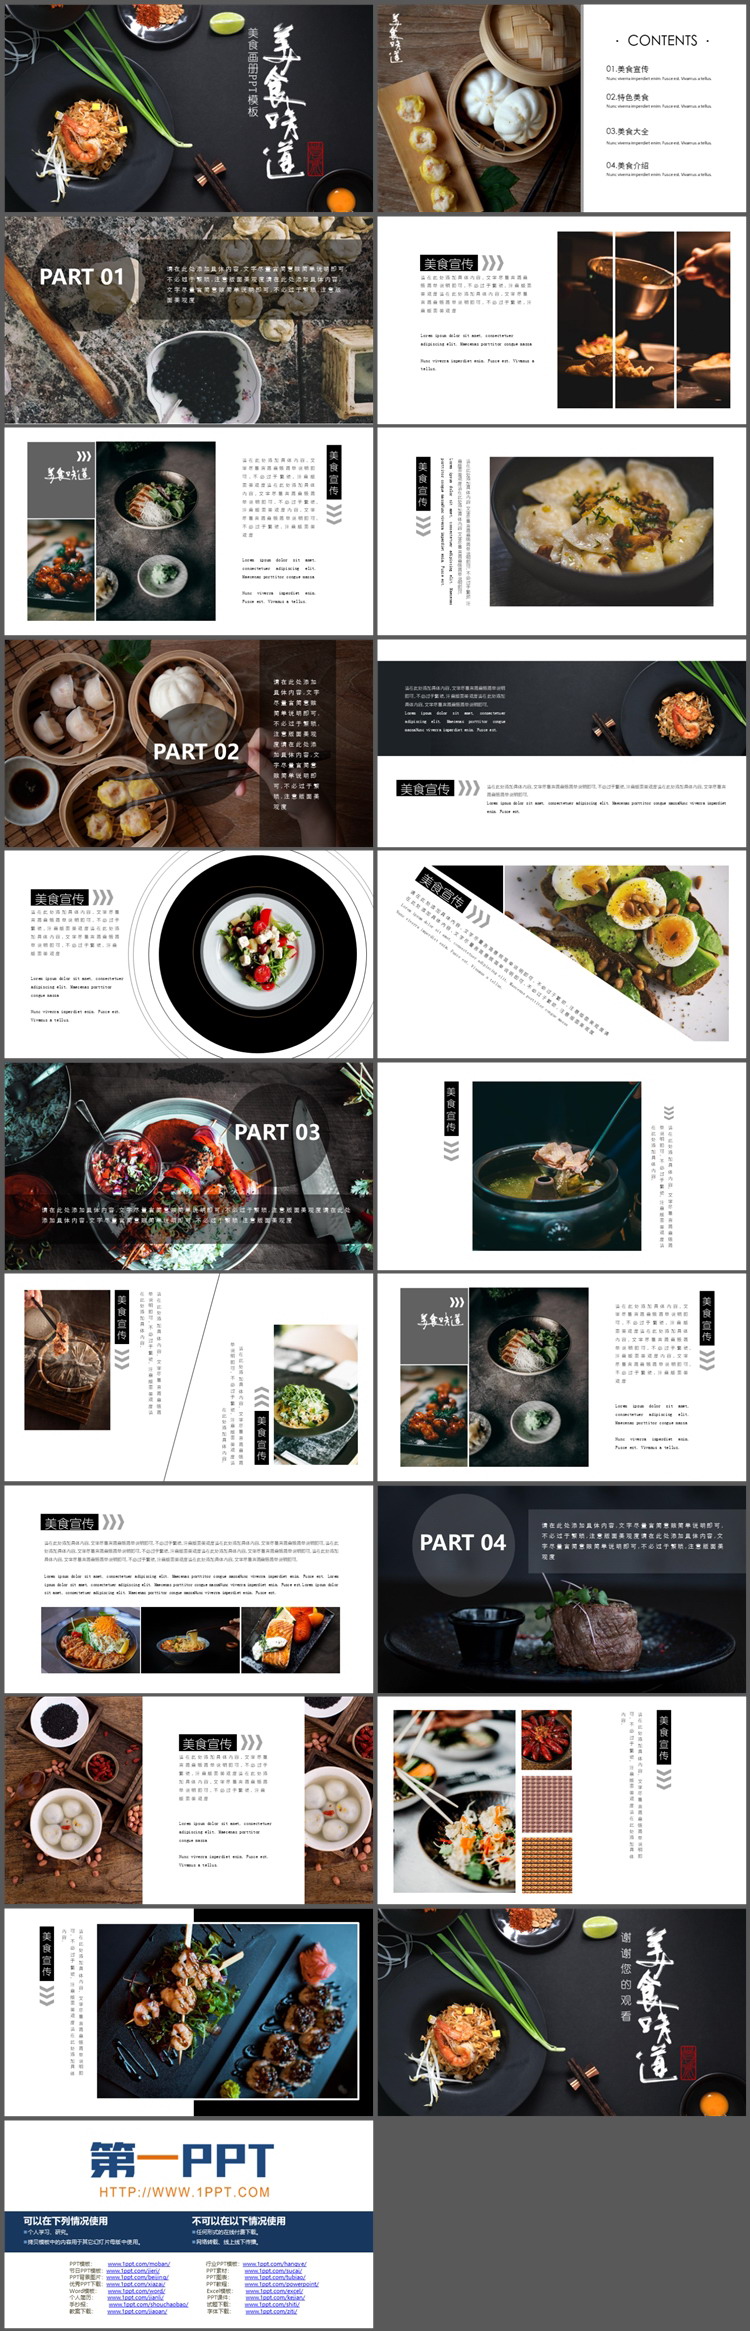 黑色餐盘背景的“美食味道”餐品宣传画册PPT模板